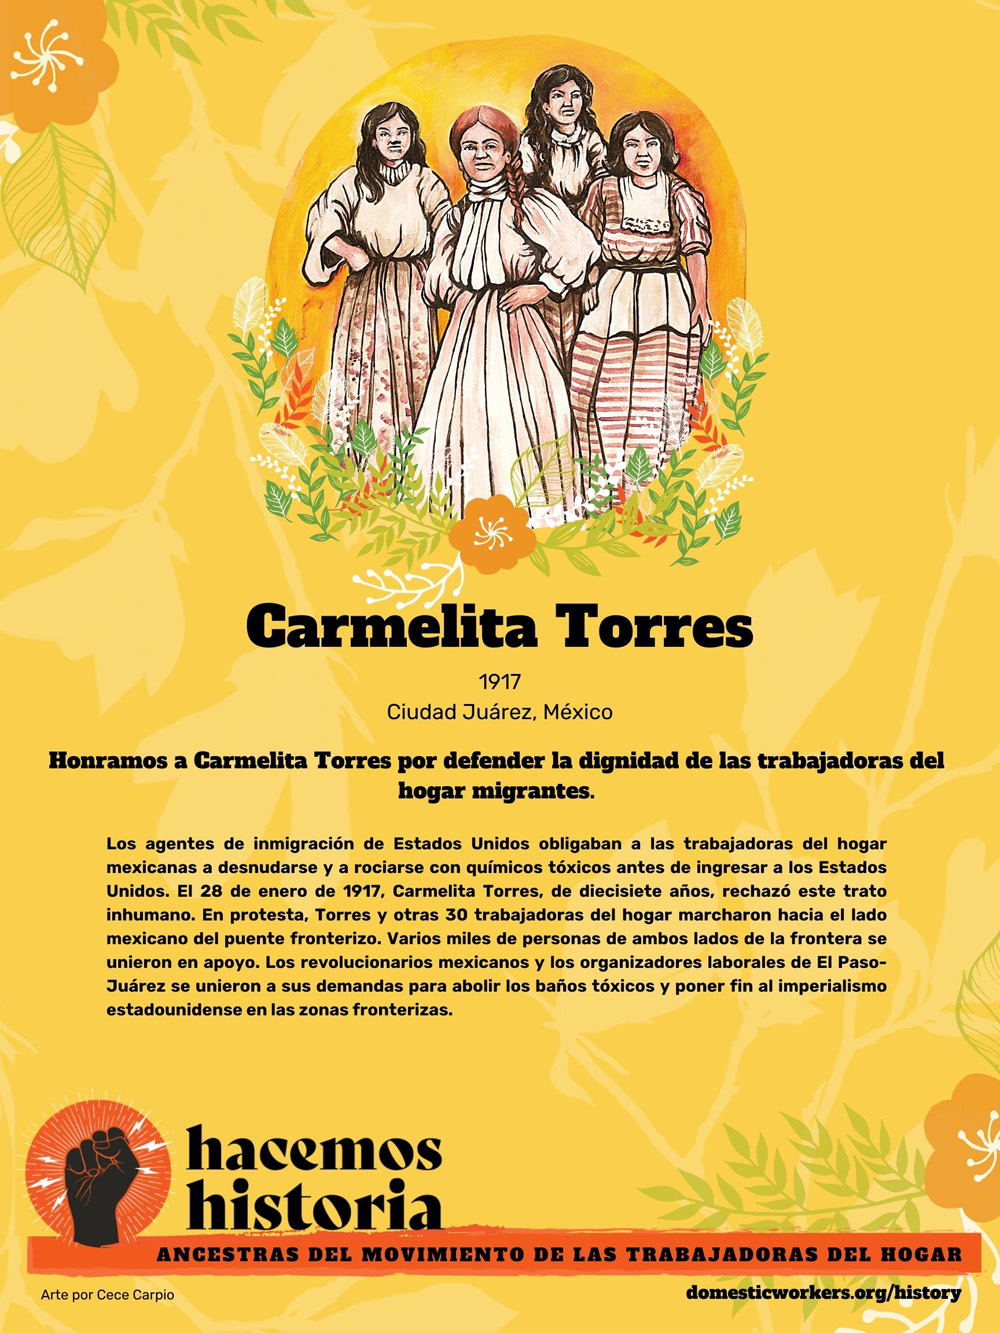 Retratos de las ancestras del movimiento de trabajadoras de hogar: Carmelita Torres